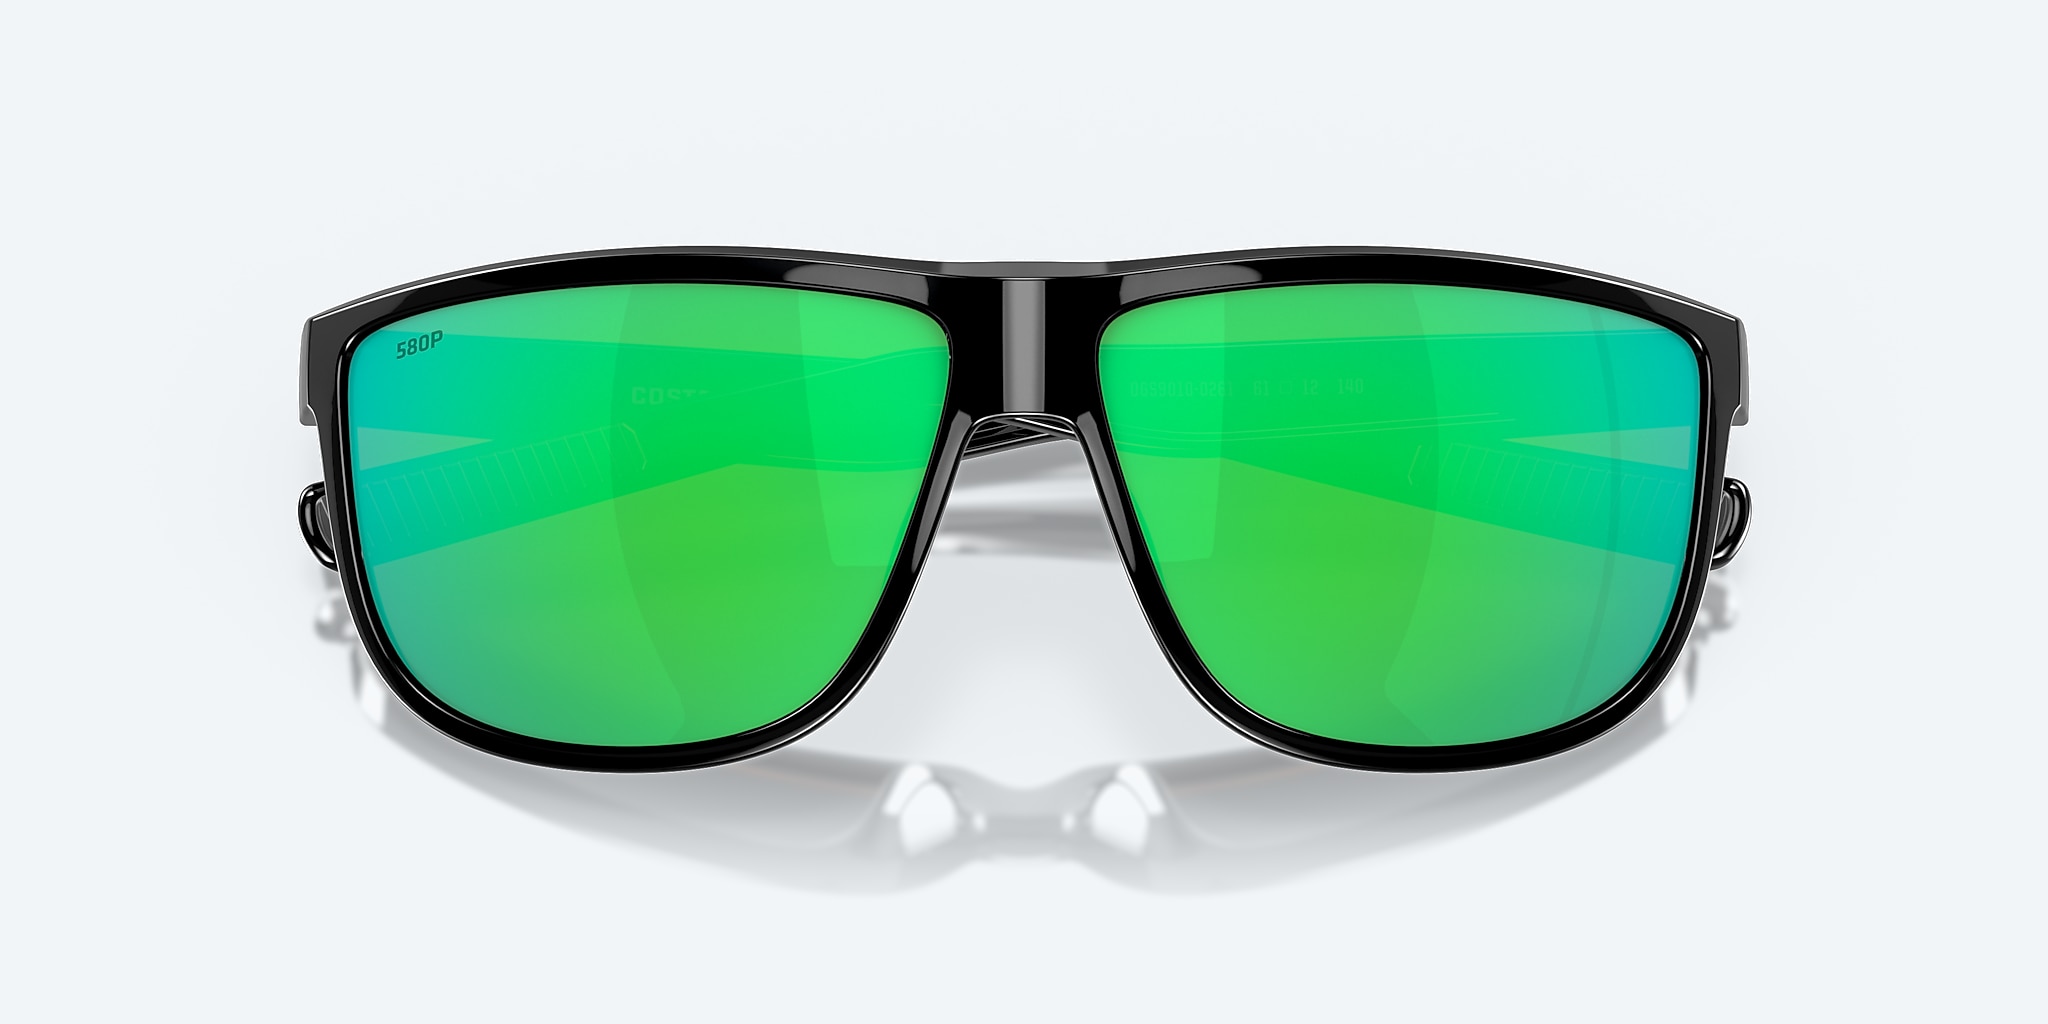 Rincondo Polarized Sunglasses in Green | Mar® Del Mirror Costa